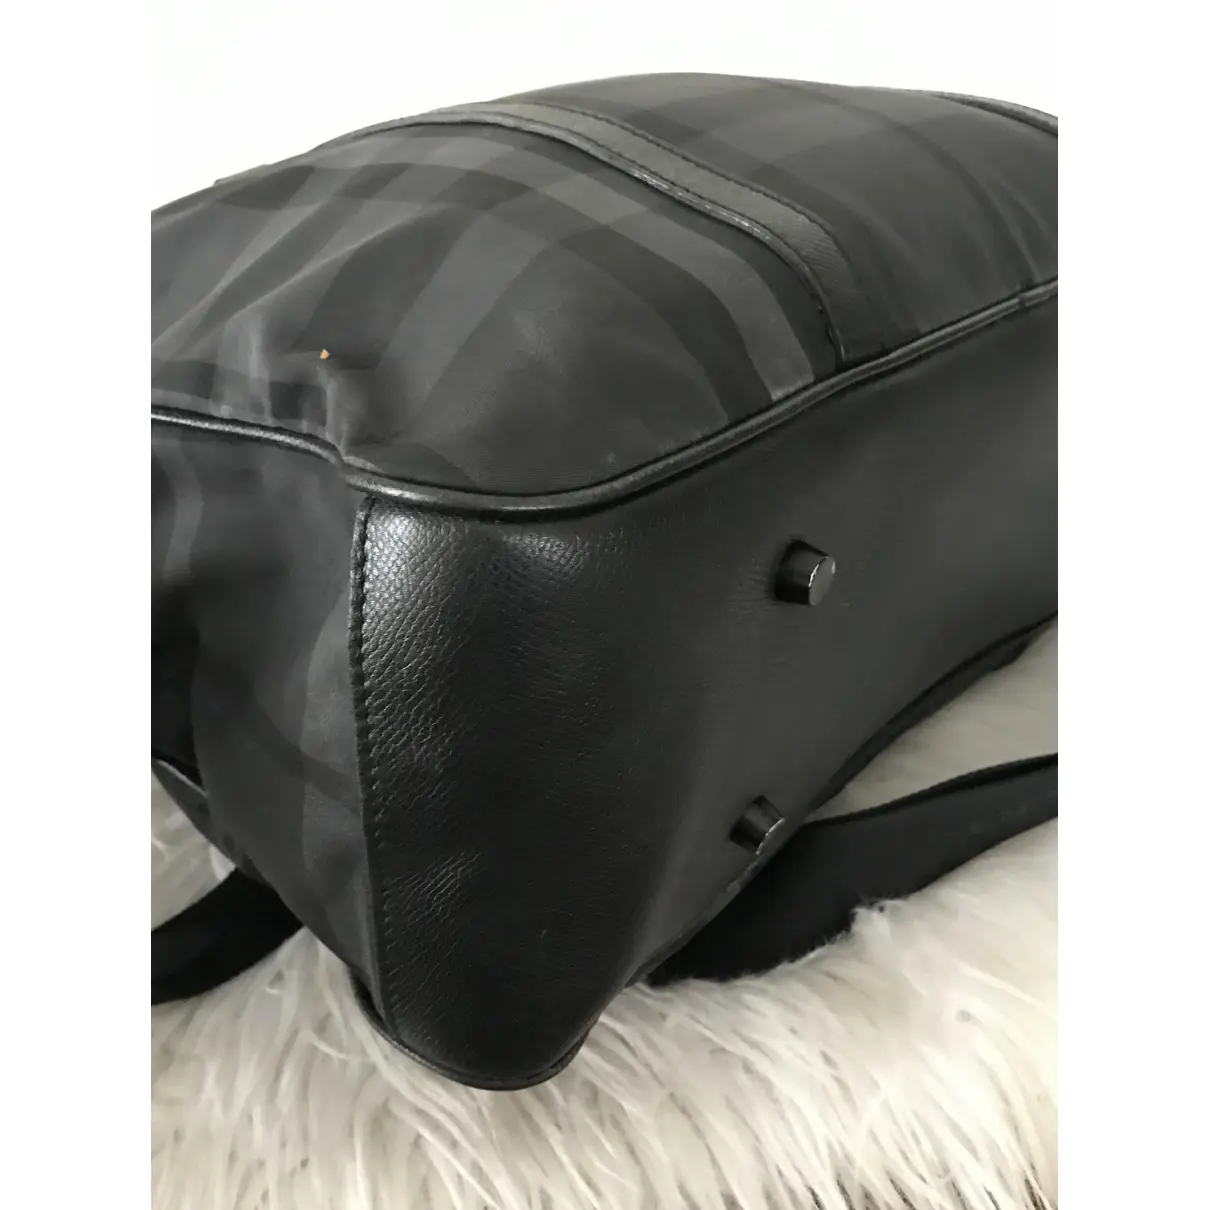 Cloth travel bag Burberry